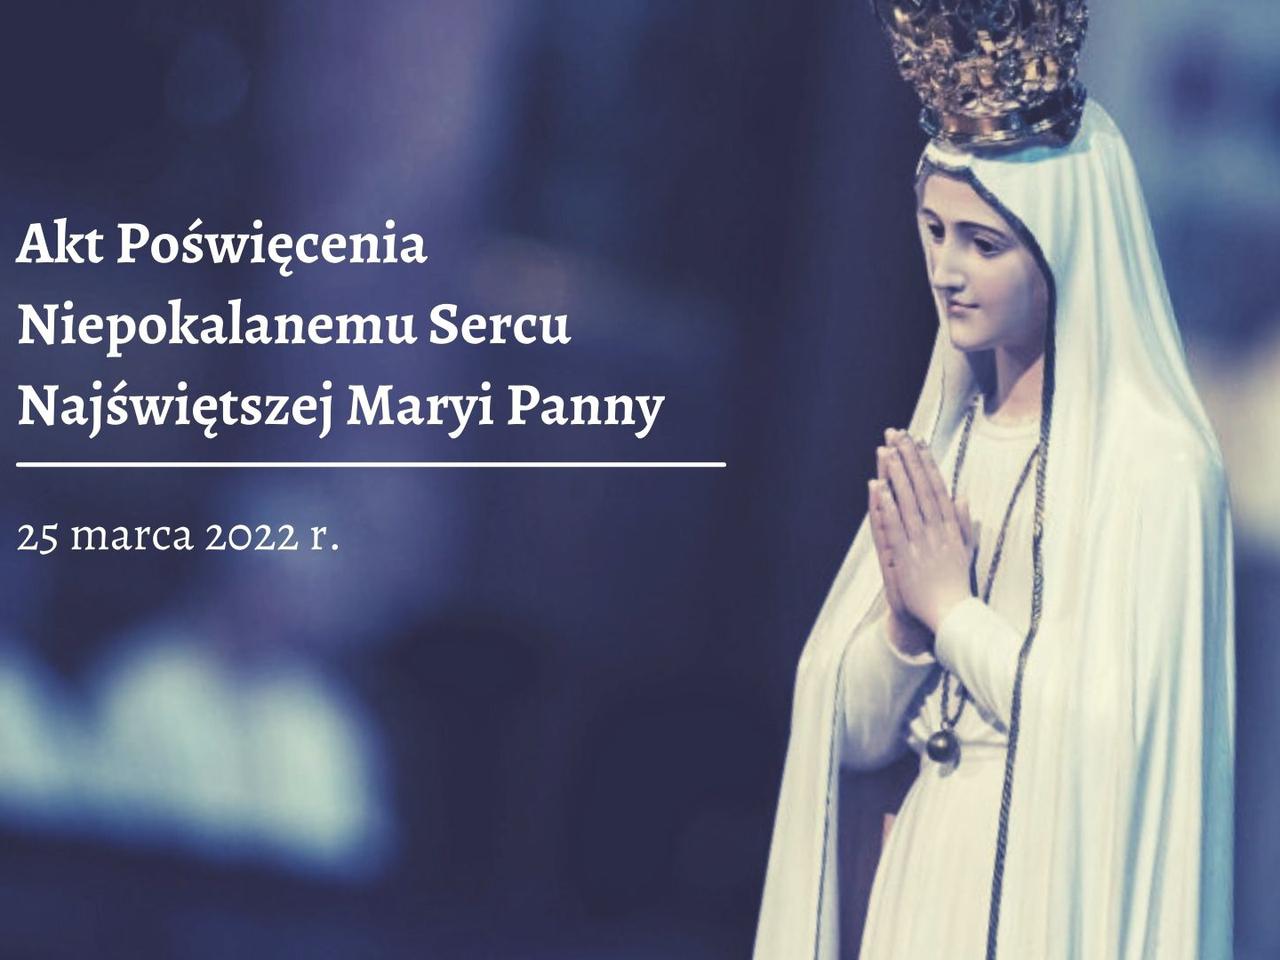 Akt poświęcenia Niepokalanemu Sercu Najświętszej Maryi Panny 25.03.2022  [TEKST] - Radioplus.pl